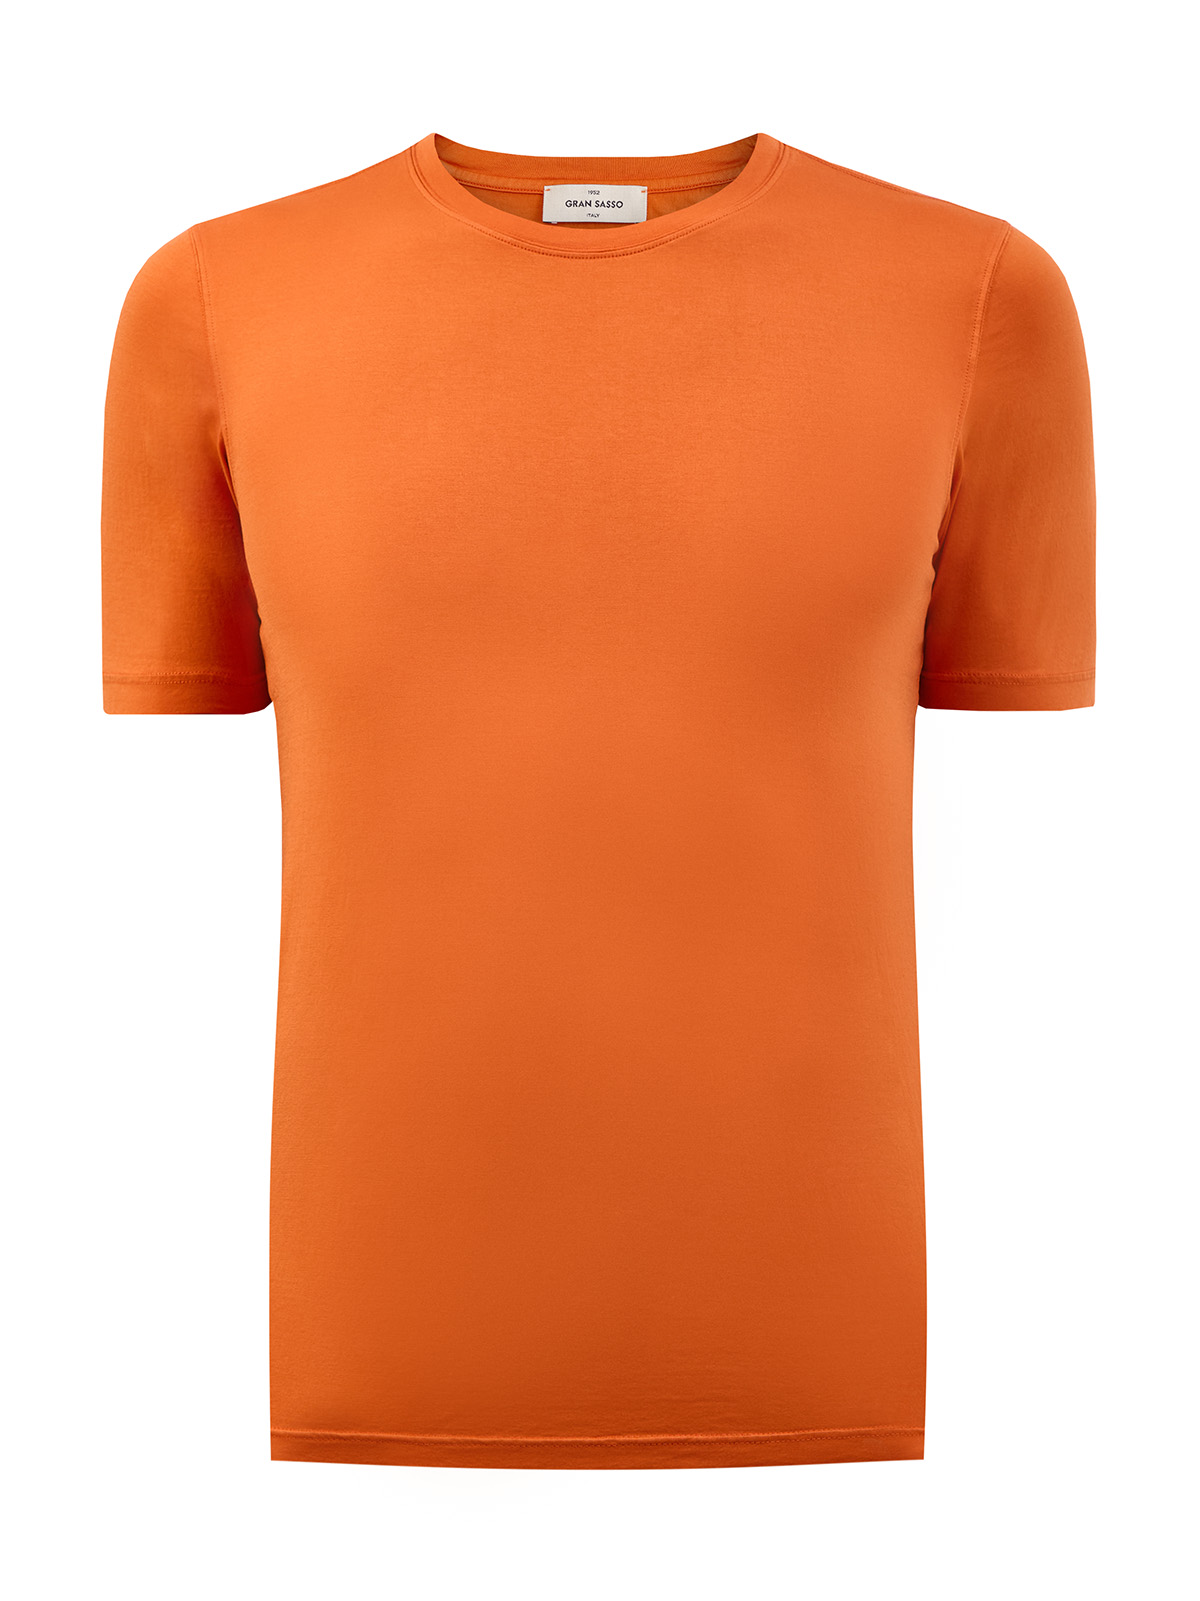 Футболка из гладкого хлопка джерси с контрастной нашивкой GRAN SASSO, цвет оранжевый, размер 48;50;56